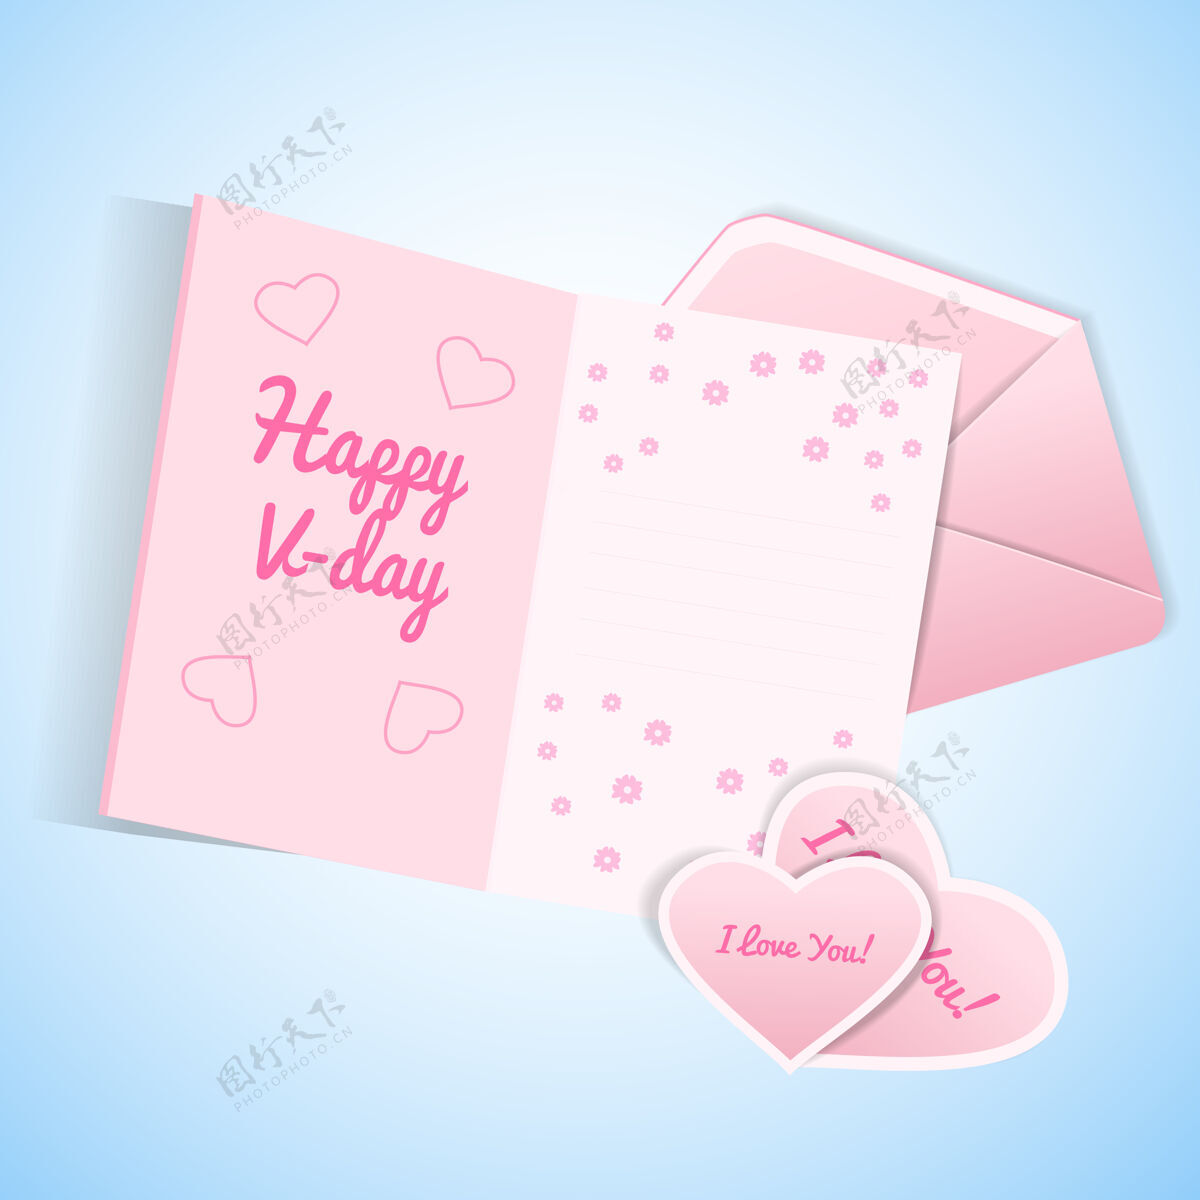 忏悔可爱的情人节设置与粉红色和白色信封卡与愿望和情人与爱忏悔插图绘画迷人情人节